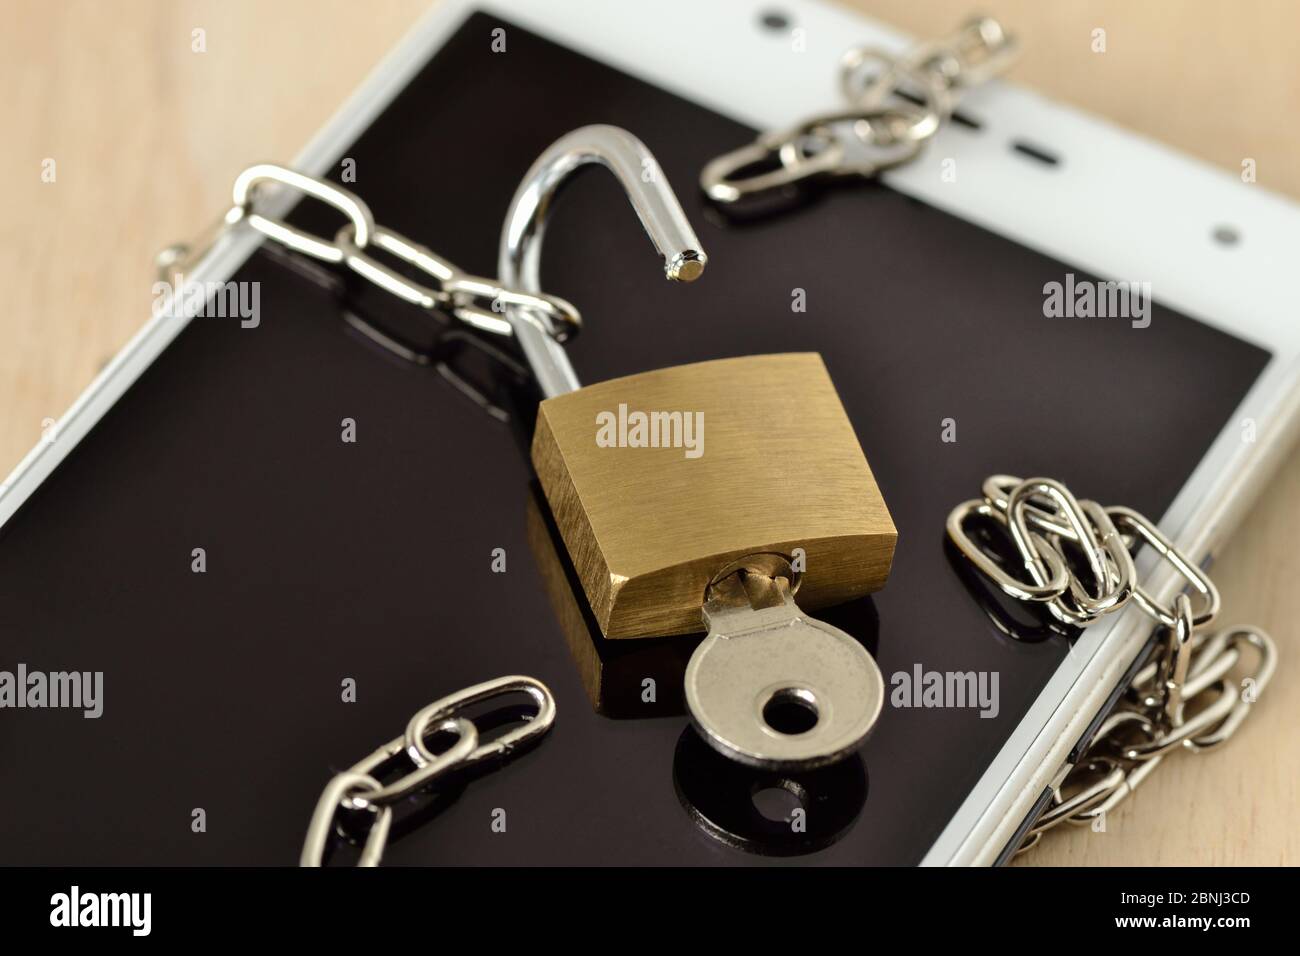 Apri il lucchetto con catena sul telefono cellulare - concetto di phishing e sicurezza sui telefoni cellulari Foto Stock